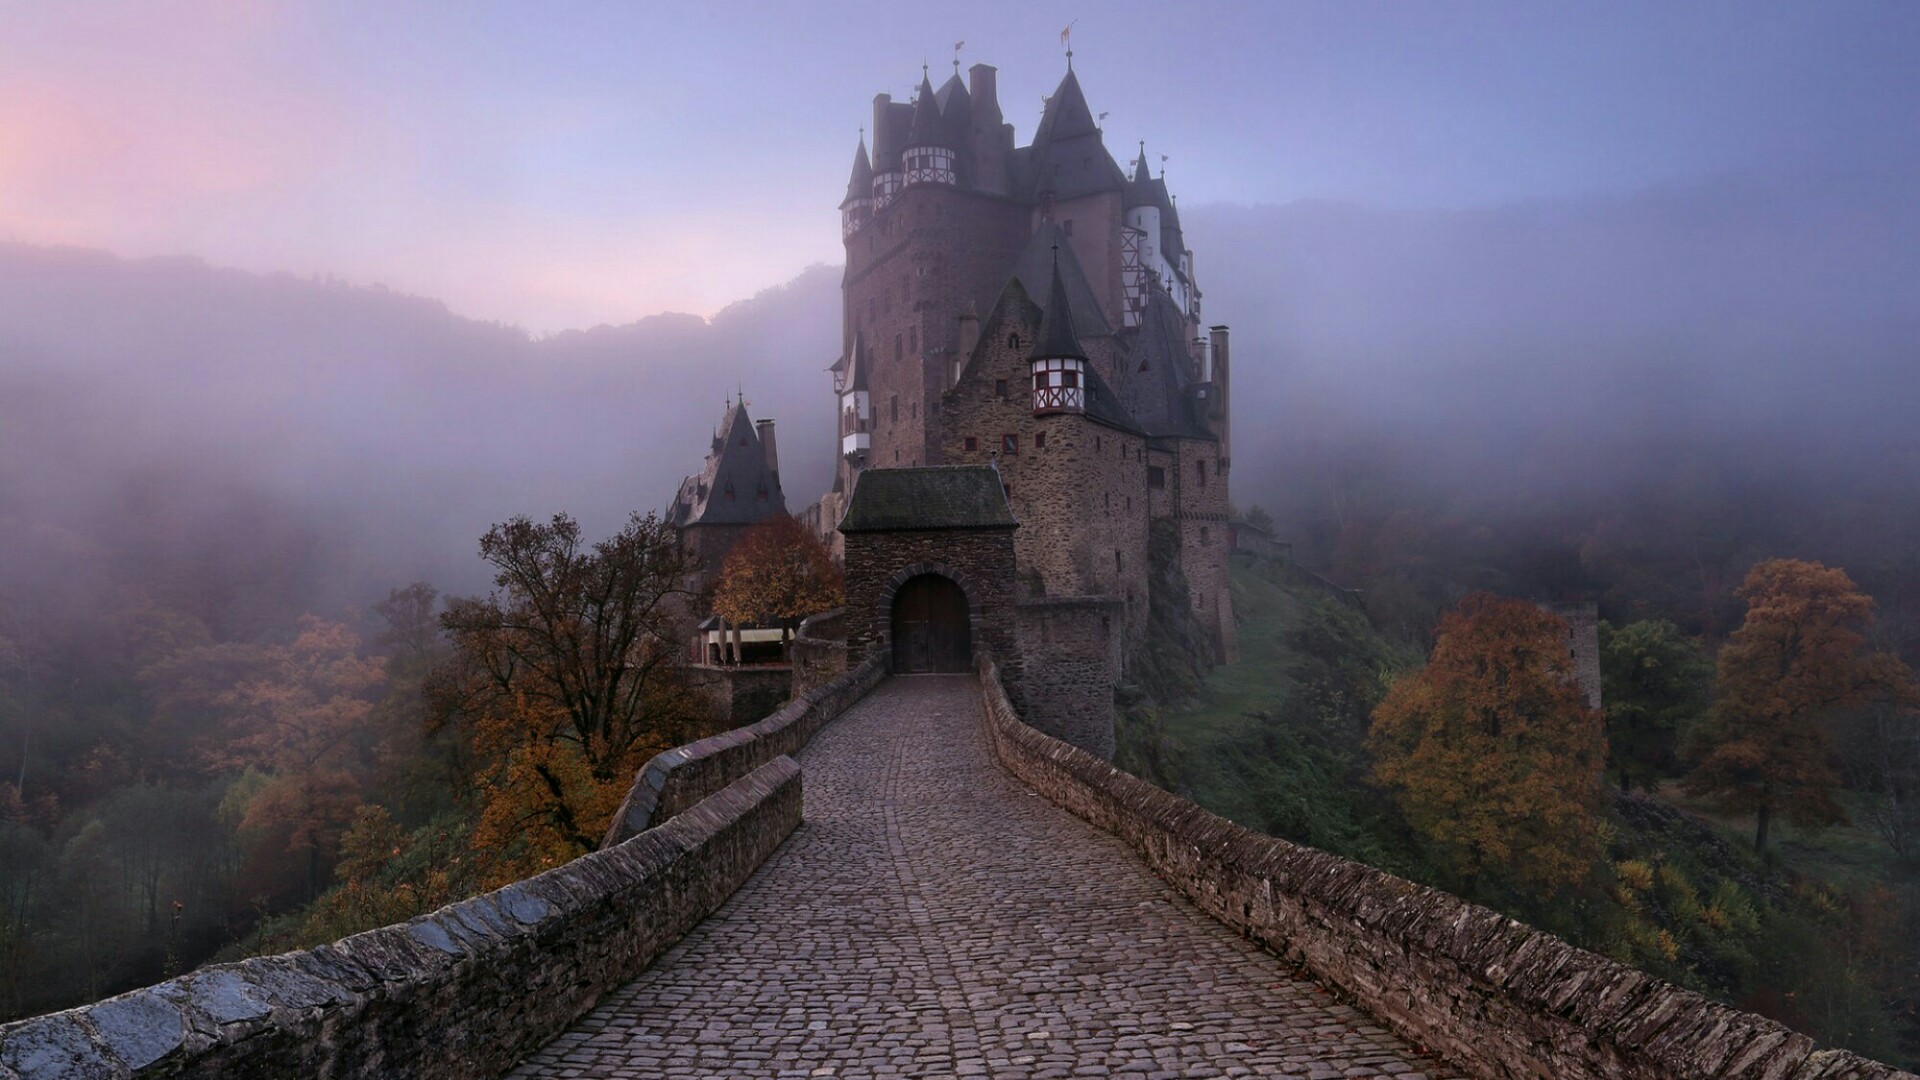 Eltz Castle on a Misty Night